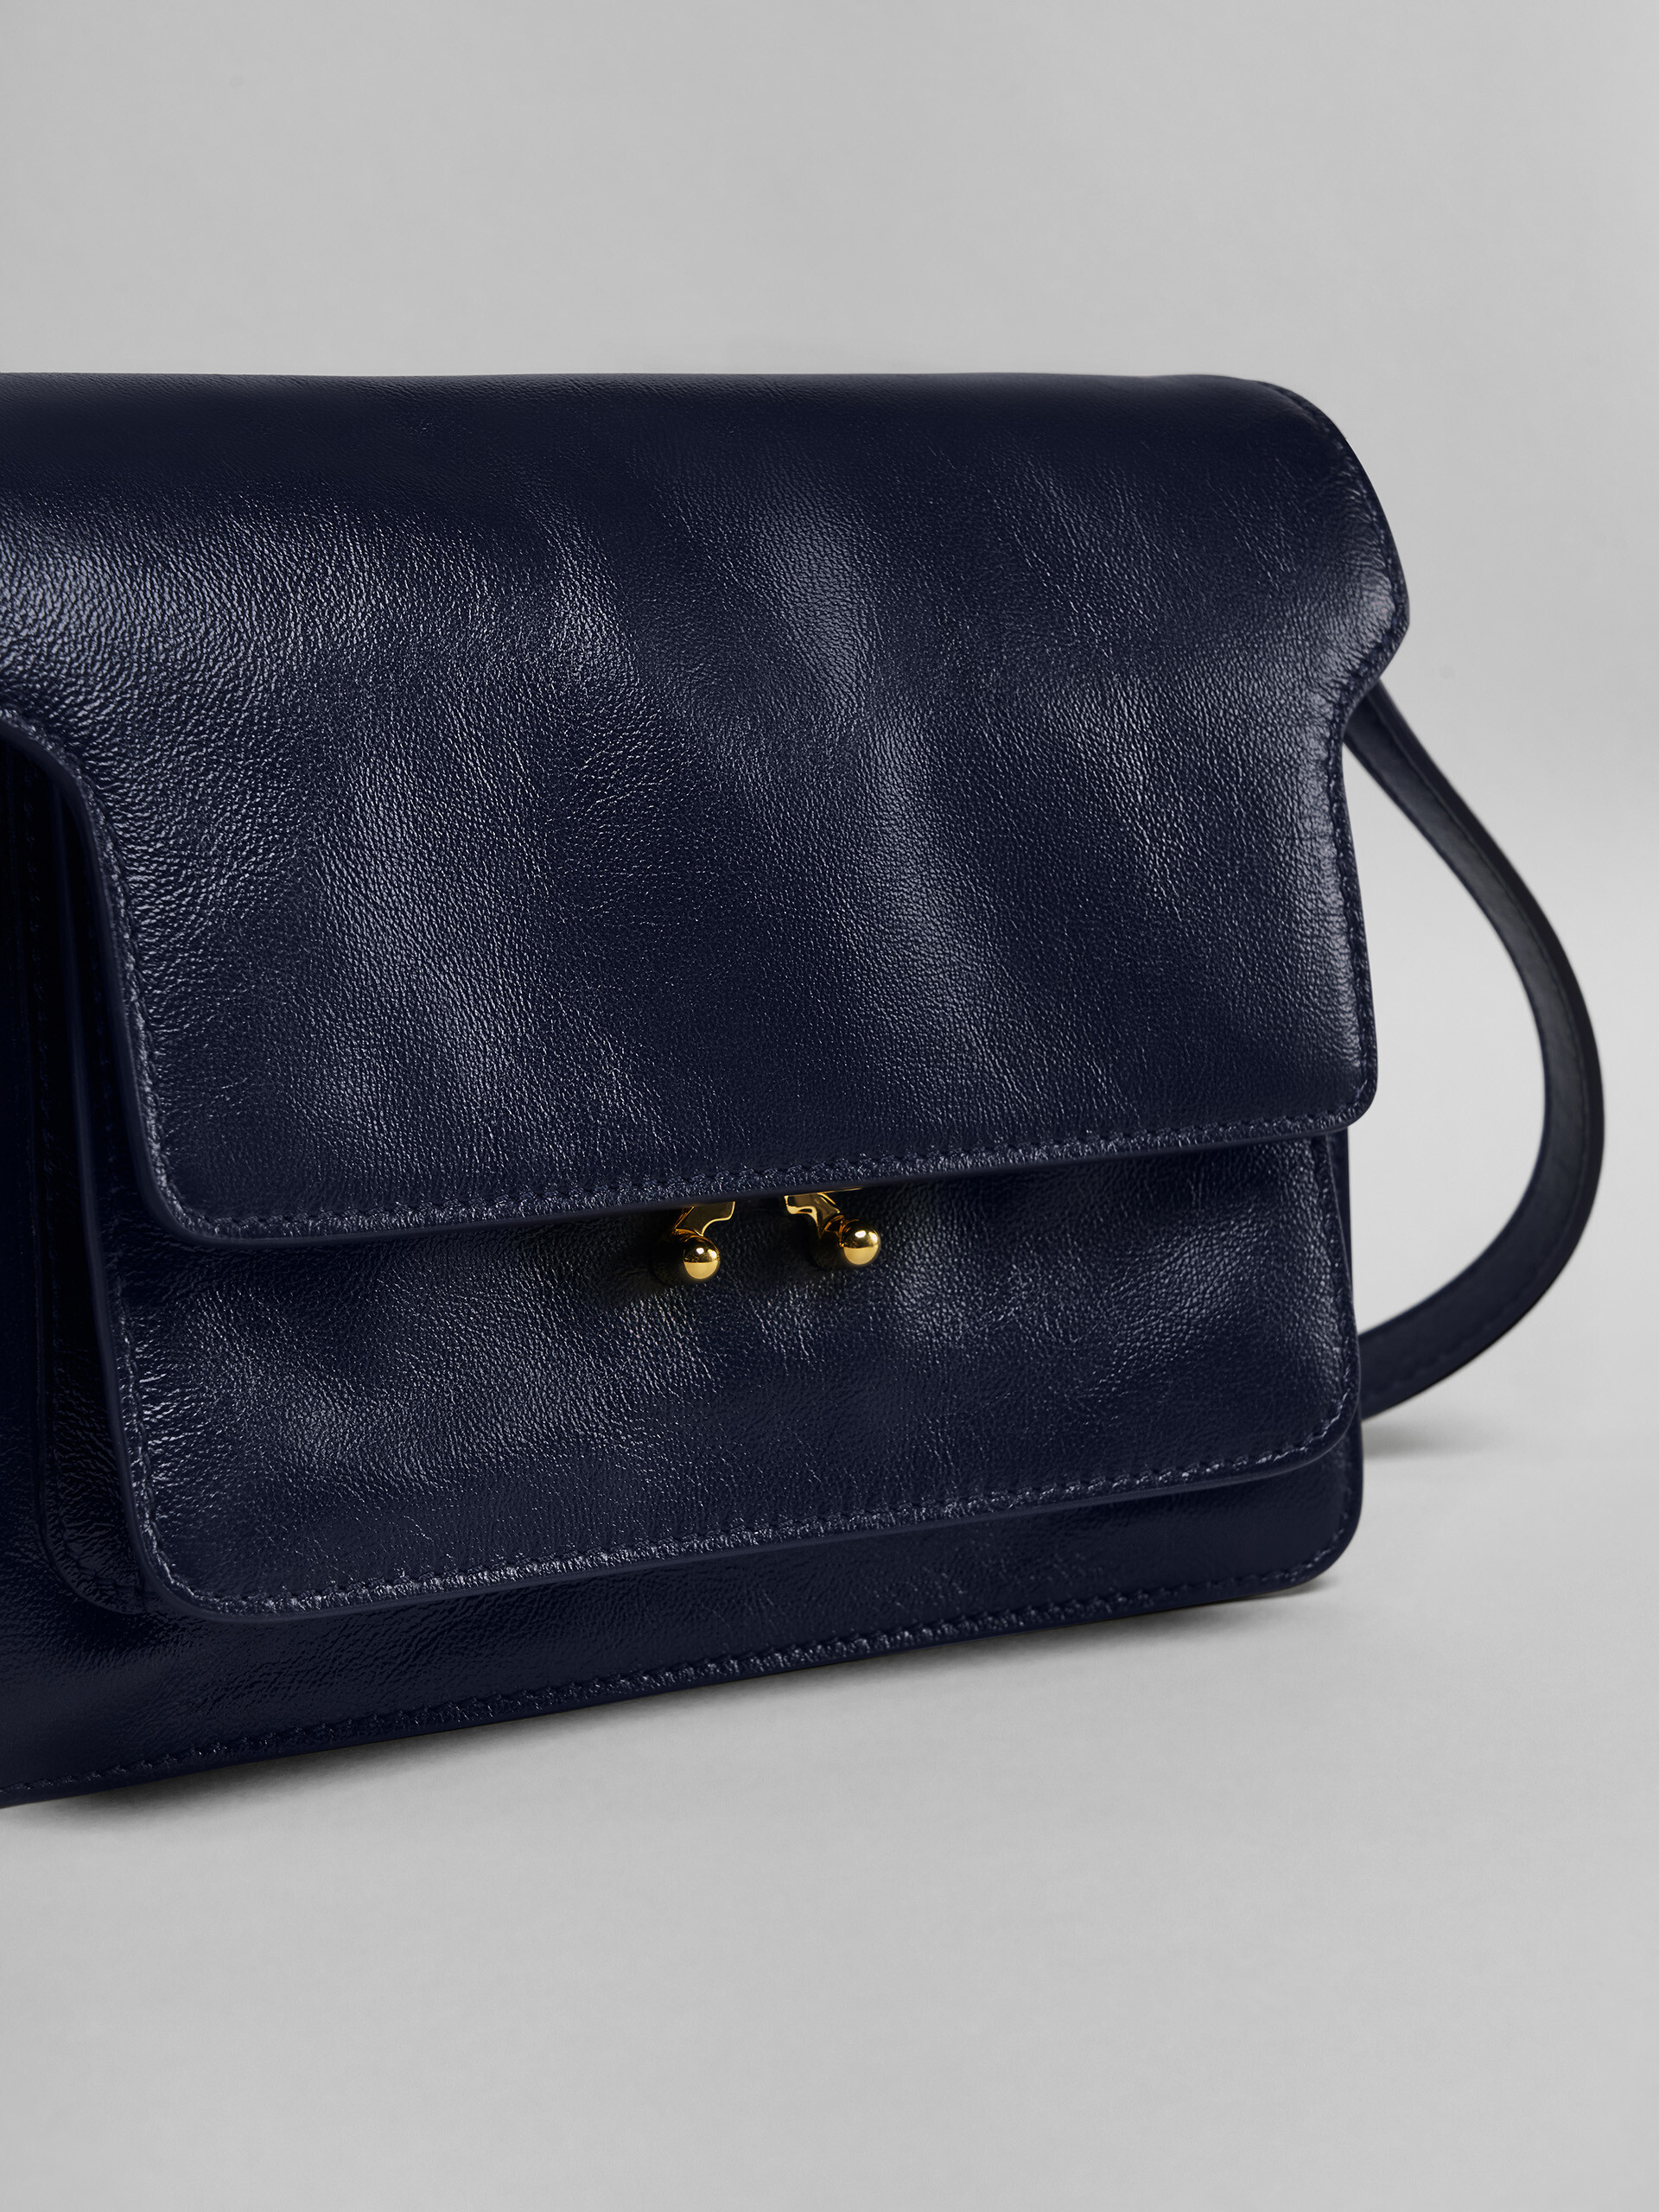 TRUNK SOFT medium bag in blue leather - Shoulder Bag - Image 5